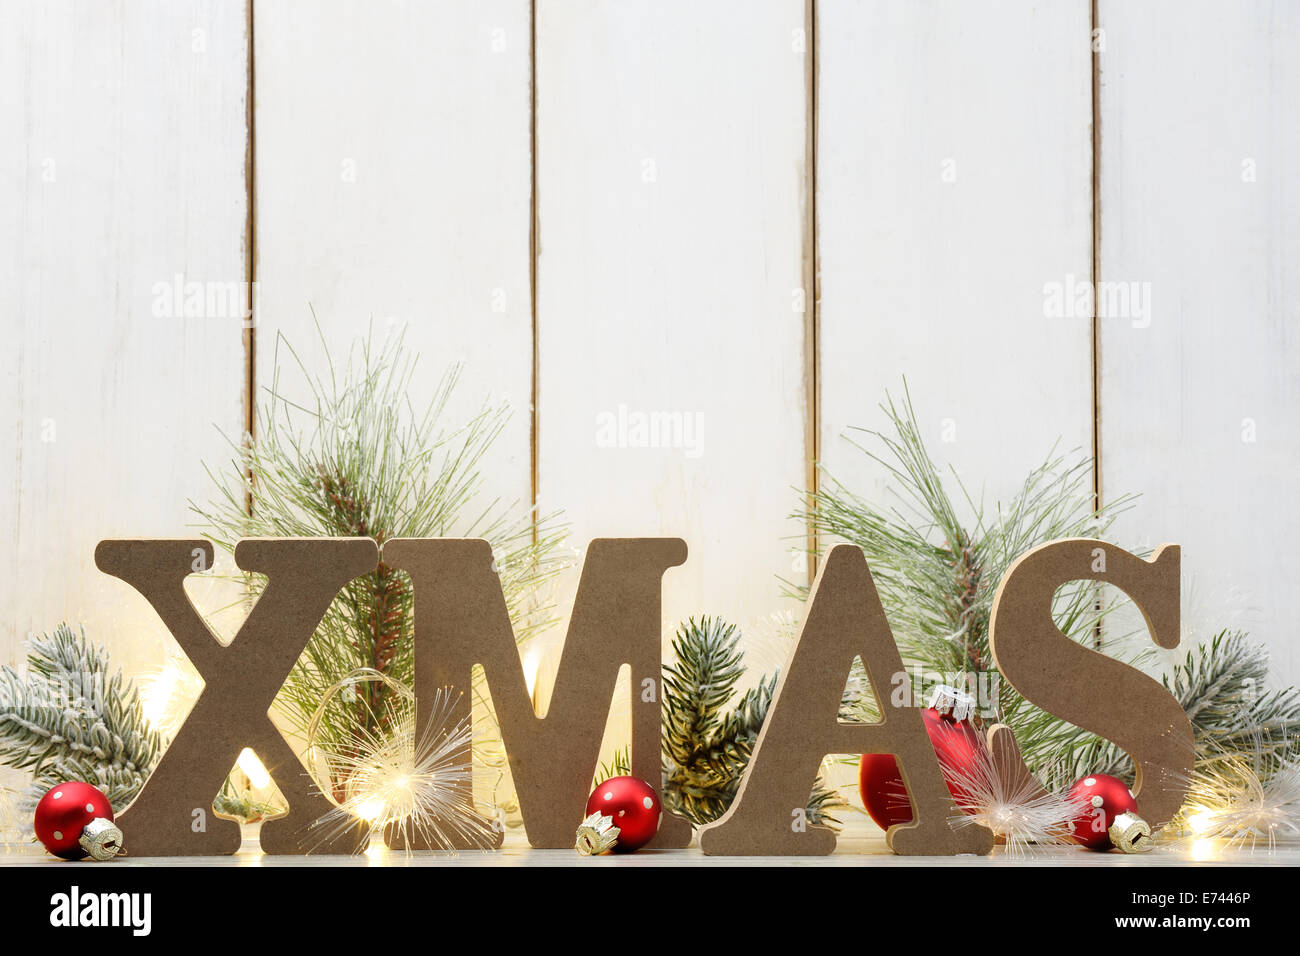 Natale in legno con le palle di Natale e fir ramo su uno sfondo di legno Foto Stock